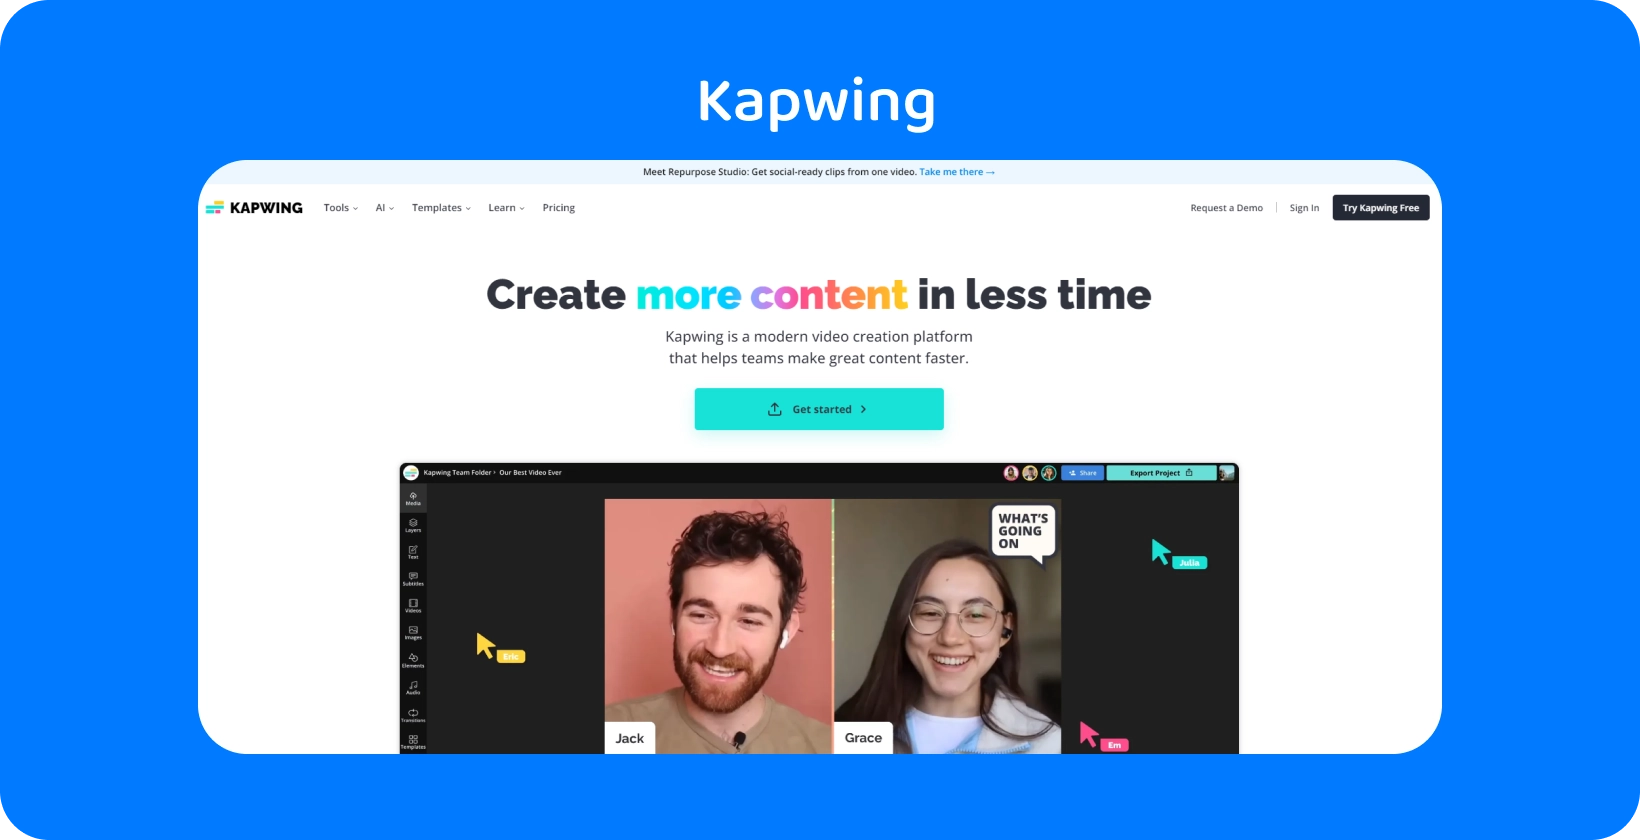 L'editor di sottotitoli Kapwing si presenta con un'interfaccia intuitiva, aiutando i team nella creazione efficiente di contenuti.